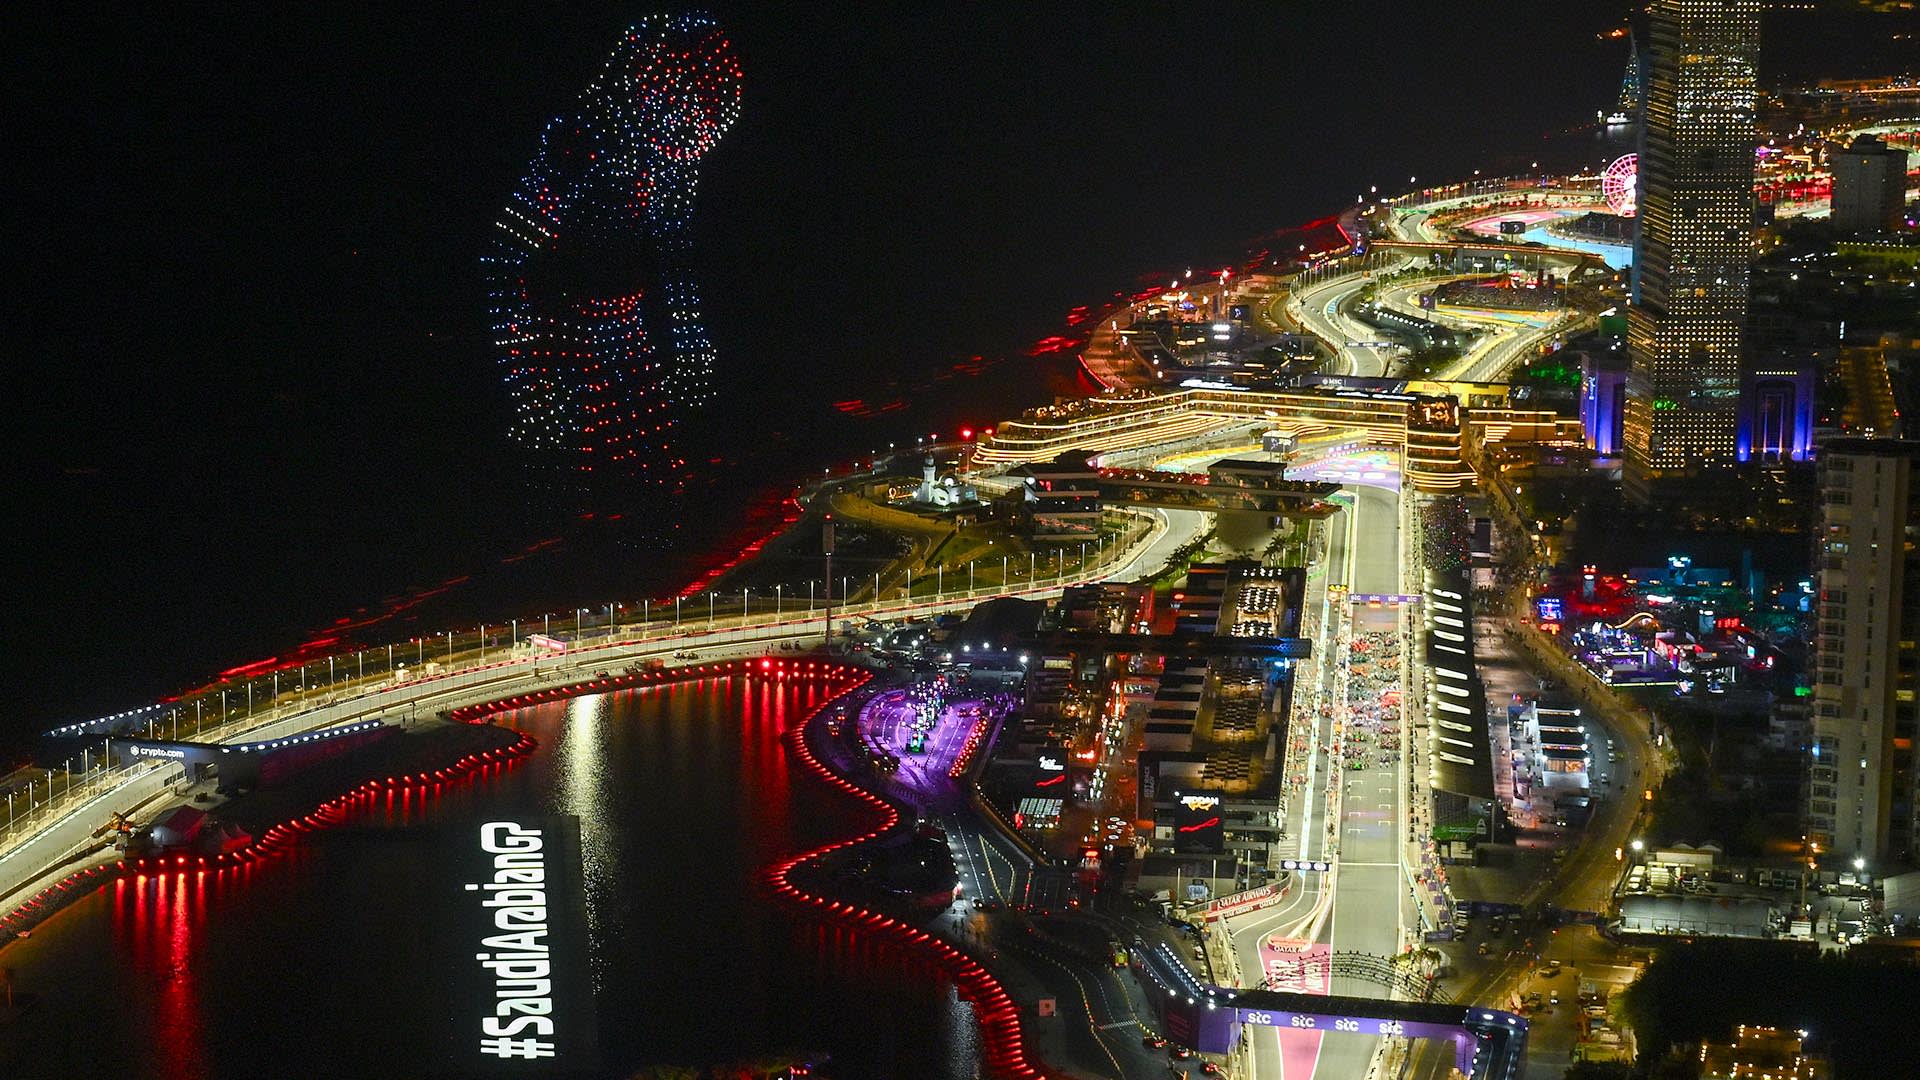 Saudi Arabia Grand Prix 2021